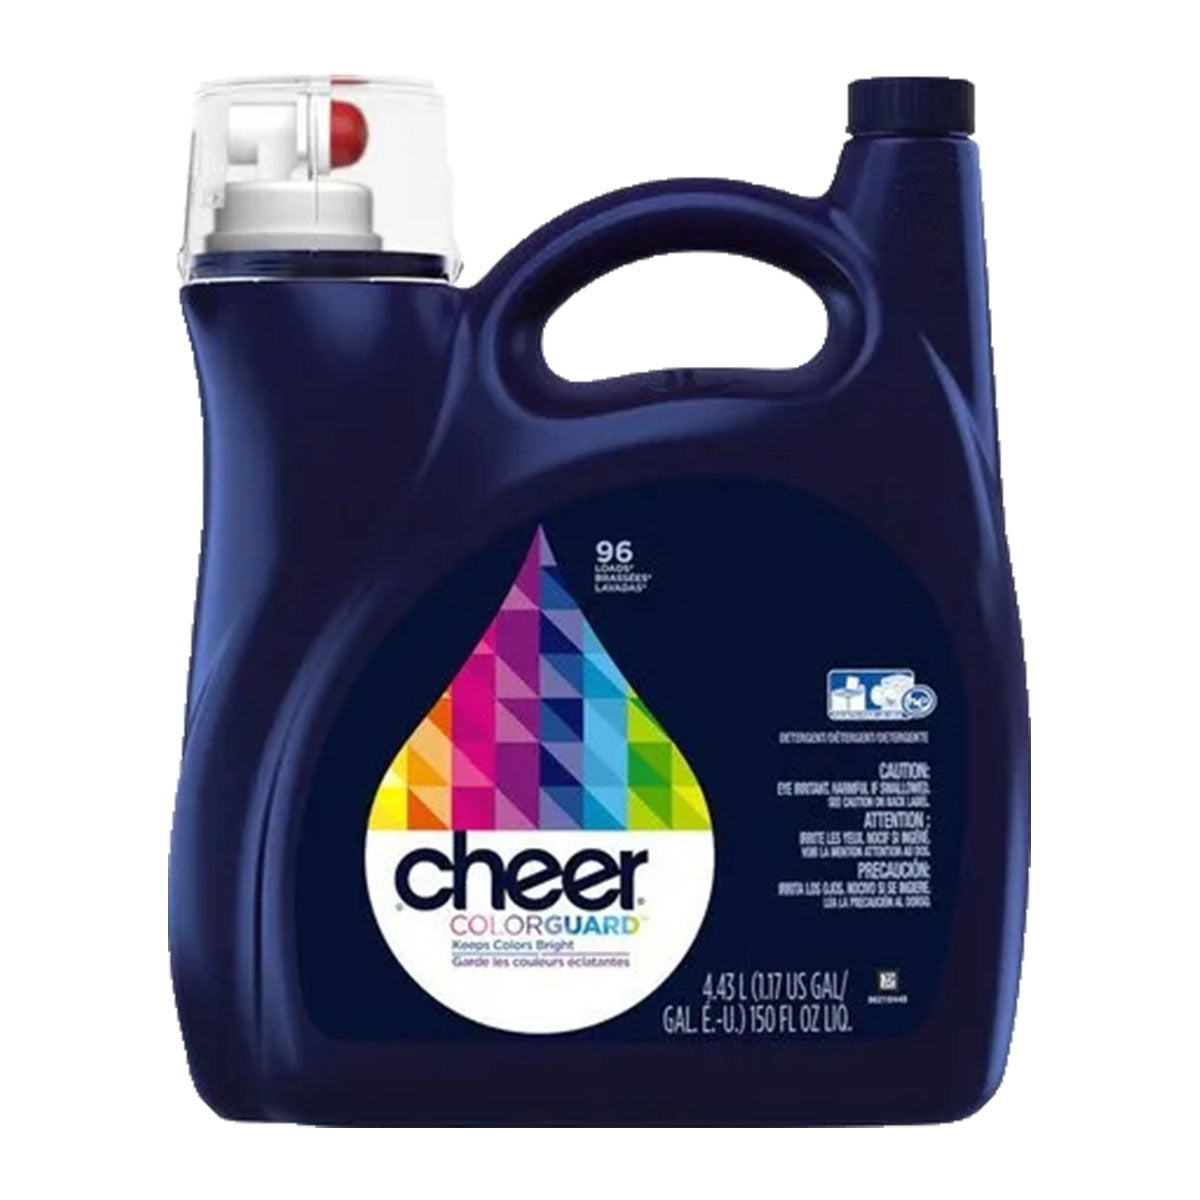 Detergente líquido concentrado para ropa Cheer Color Guard 4,43 lts 96